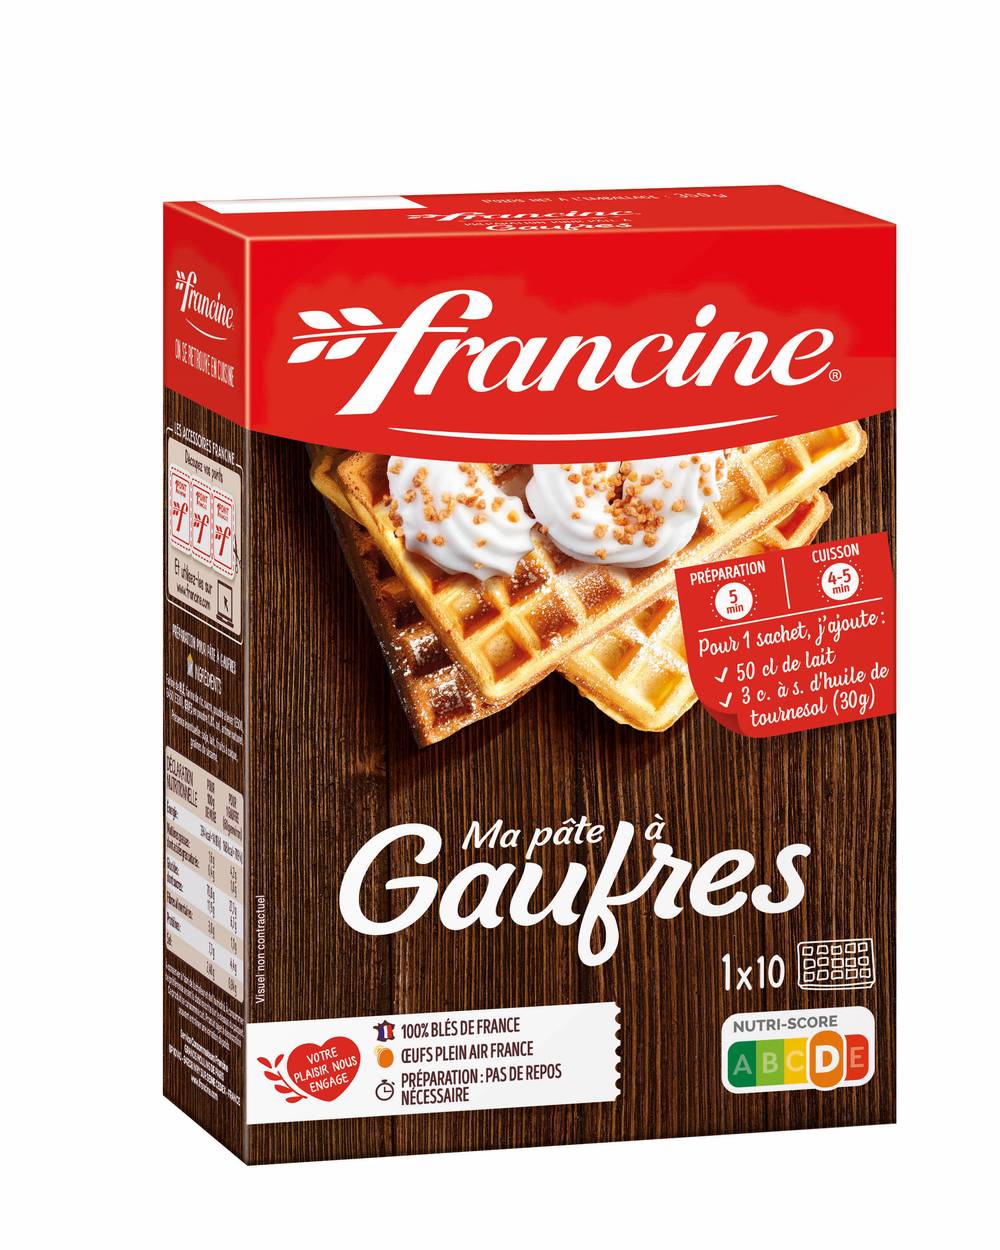 Francine - Gaufres